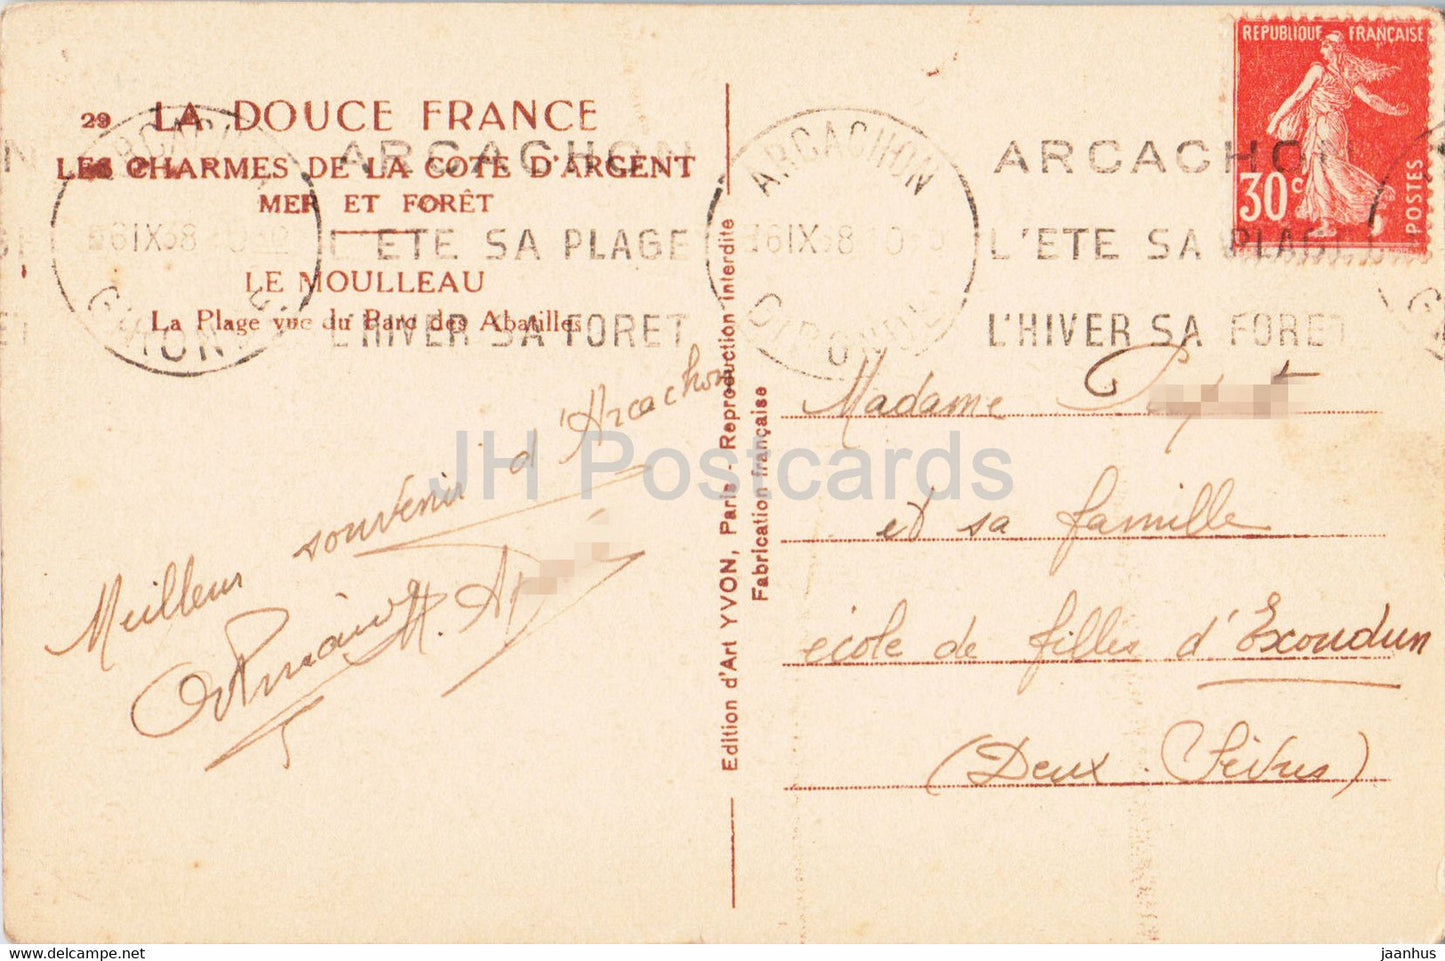 Le Moulleau - La Plage vue du Parc des Abatilles - old postcard - 1938 - France - used